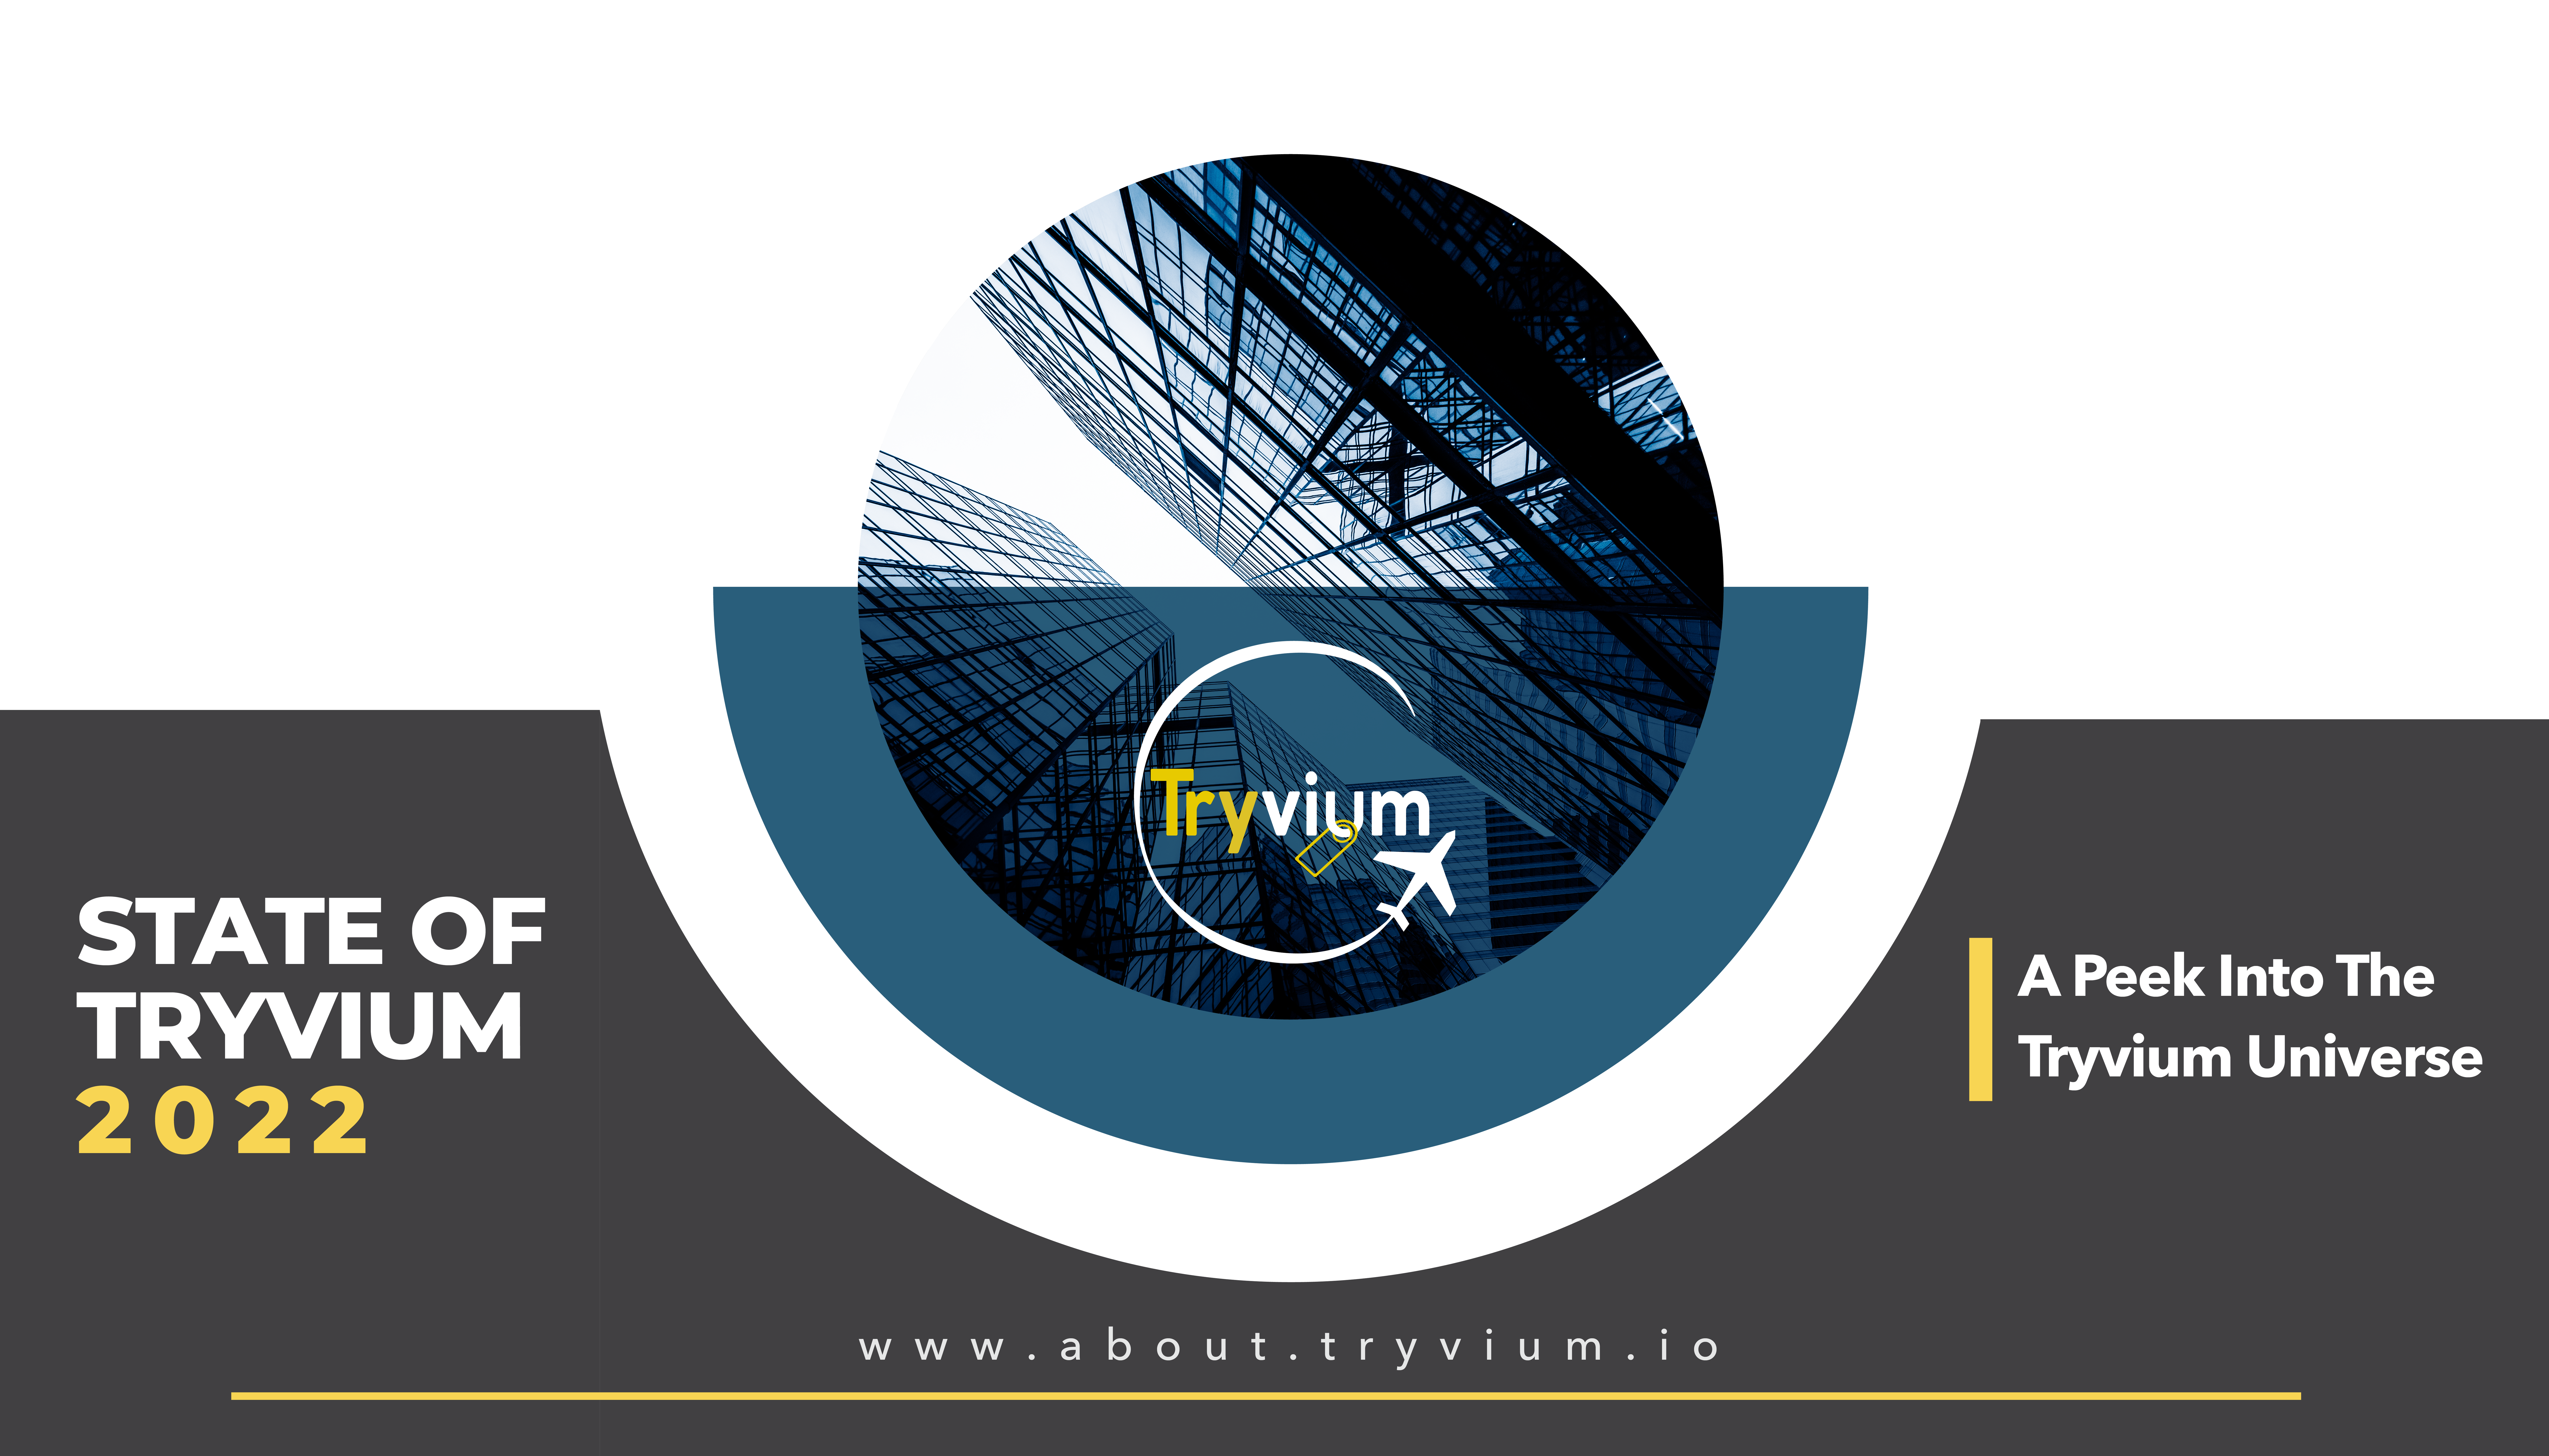 Tryvium Travels annonce l'état de Tryvium - Blog CoinCheckup